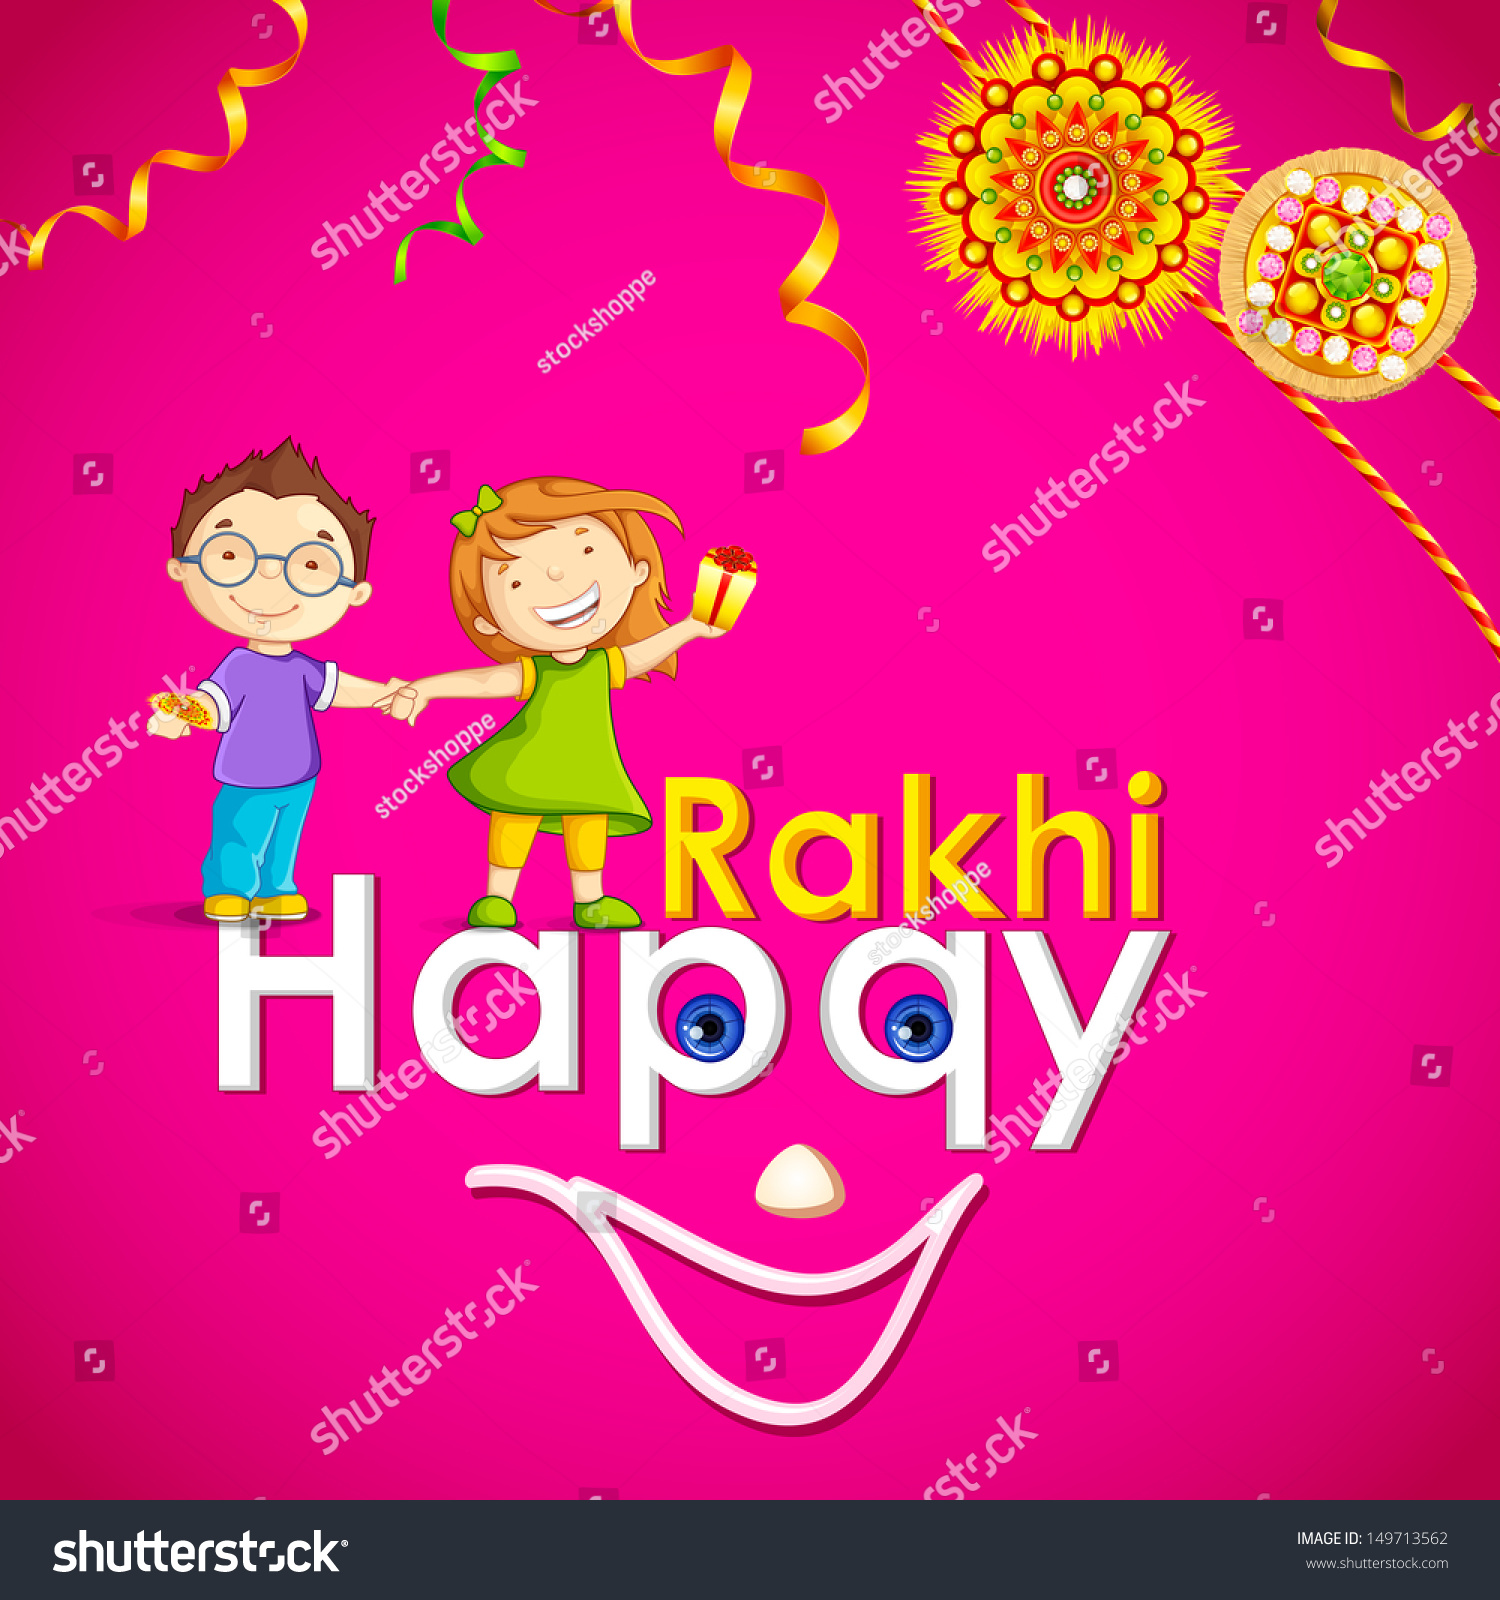 SVG of vector illustration of brother and sister in raksha bandhan svg